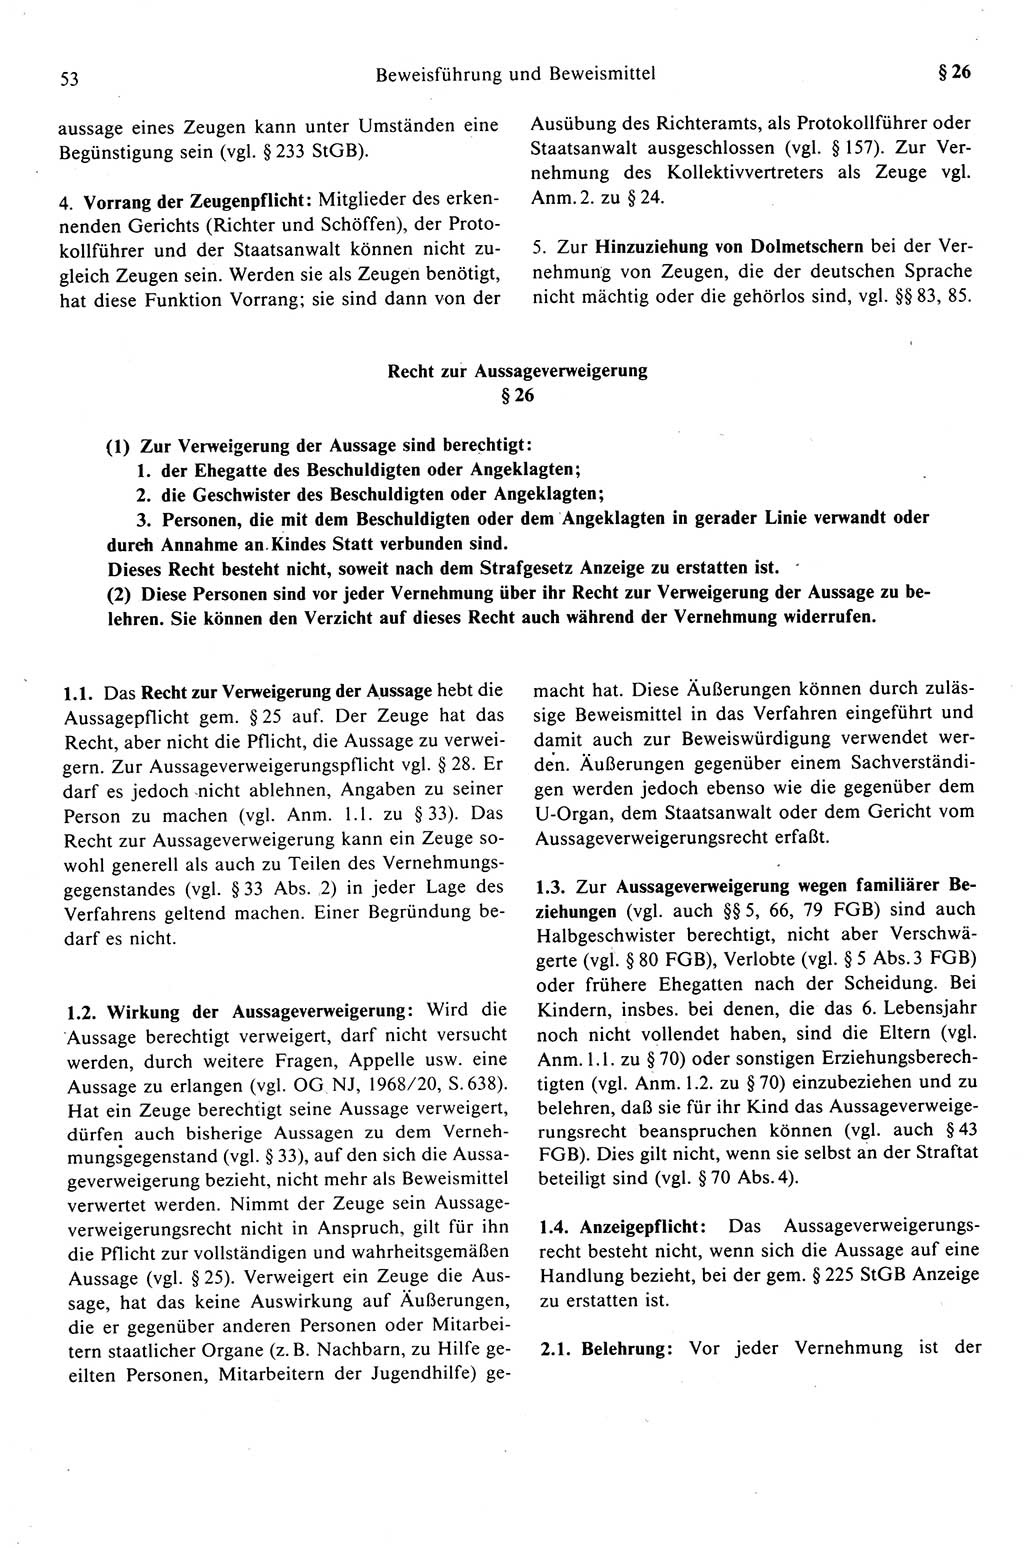 Strafprozeßrecht der DDR (Deutsche Demokratische Republik), Kommentar zur Strafprozeßordnung (StPO) 1989, Seite 53 (Strafprozeßr. DDR Komm. StPO 1989, S. 53)